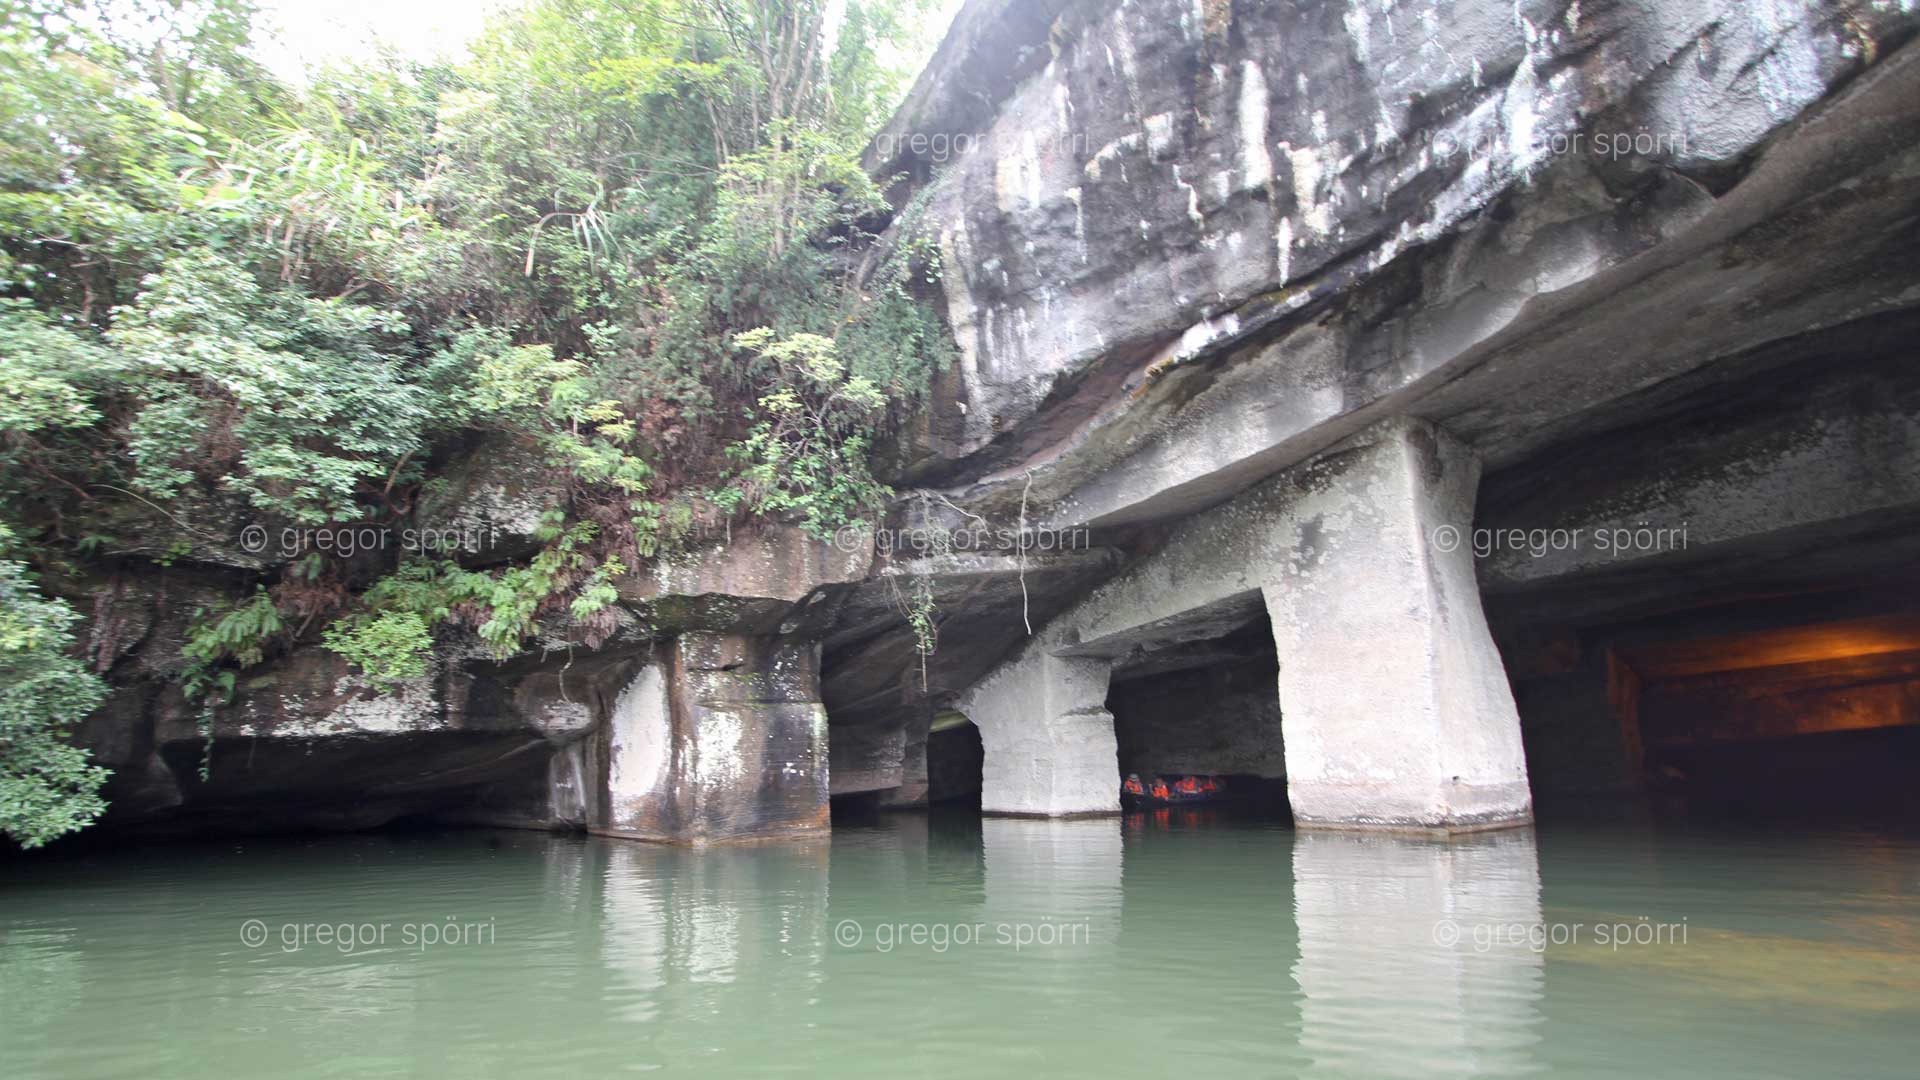 Grotte Nr. 24 in Hunang Shan is 30 metres underwater.